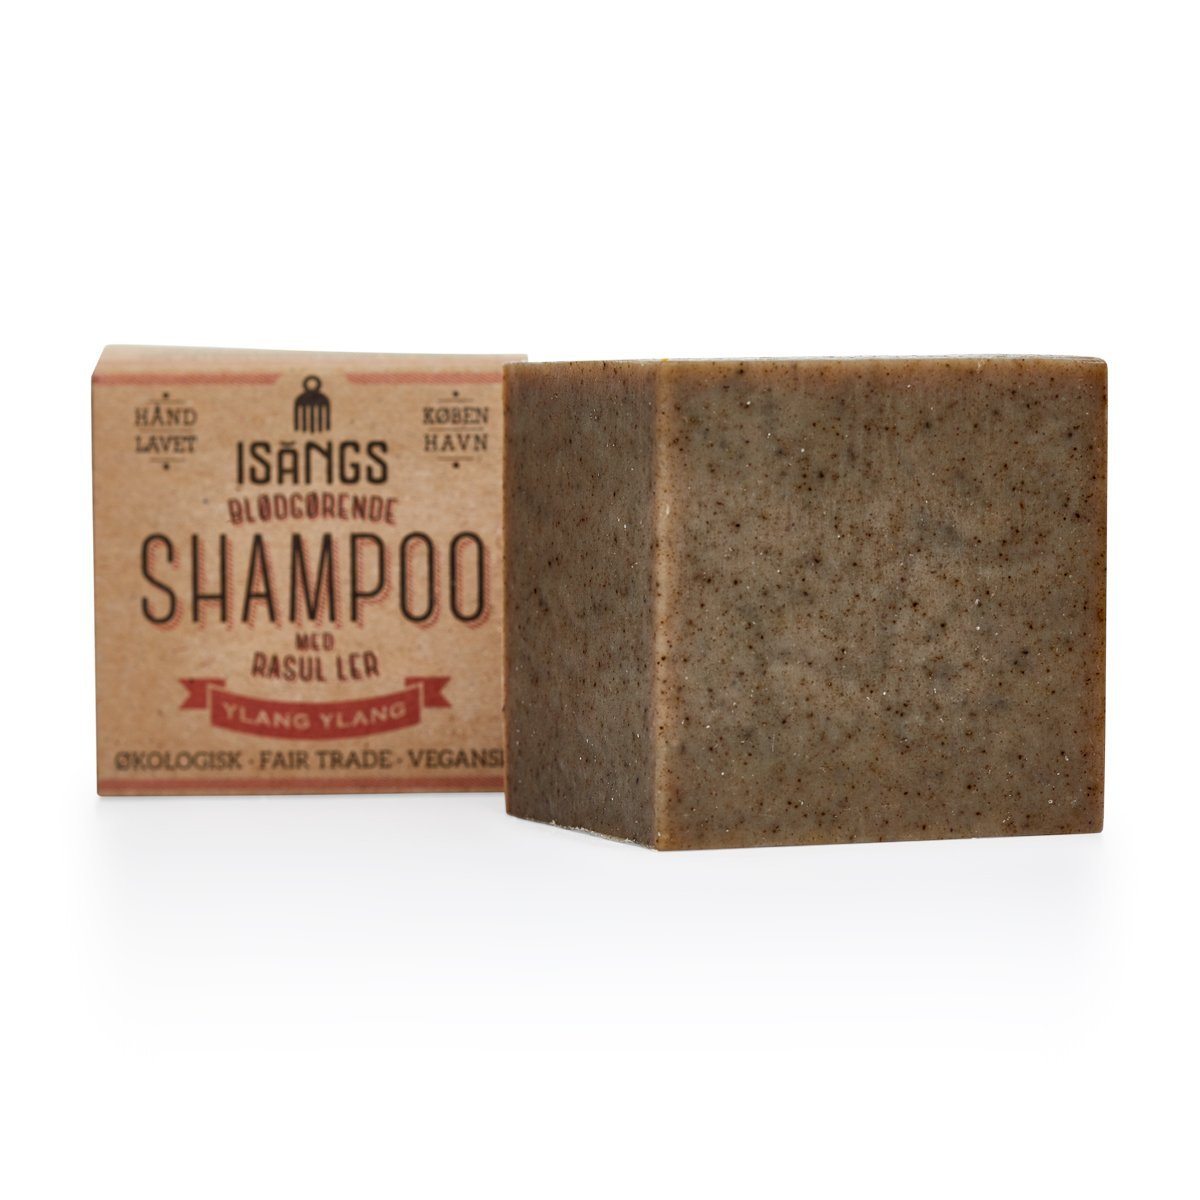 Blødgørende shampoo med rasul ler fra Hair & Body, ylang-ylang –